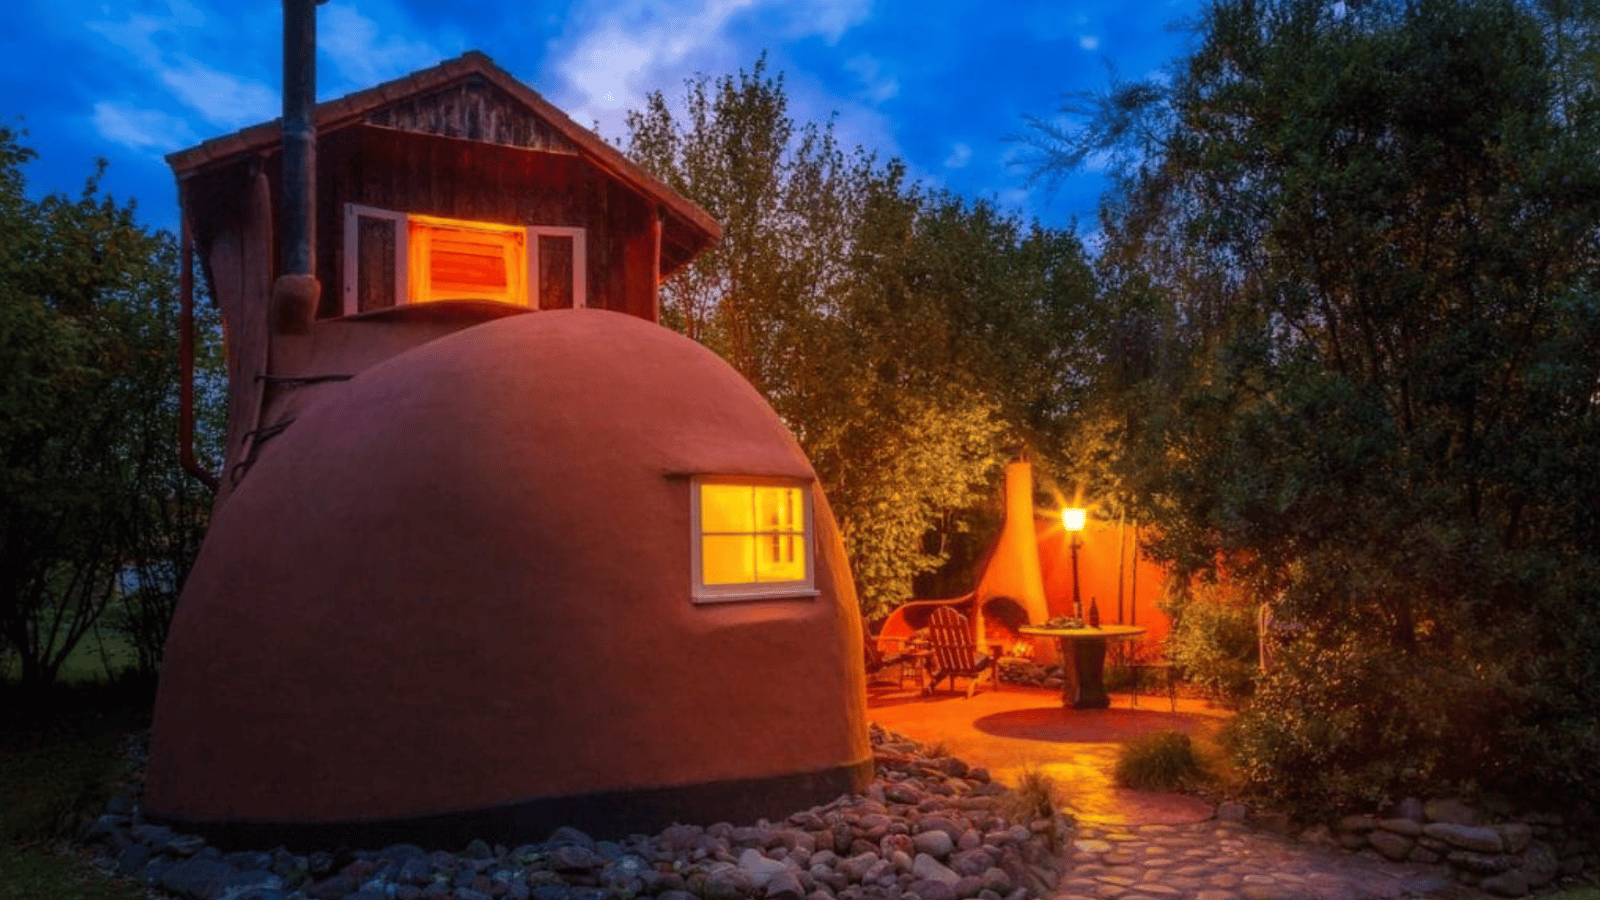 Cette maison en forme de botte est à louer sur Airbnb et son intérieur vous charmera